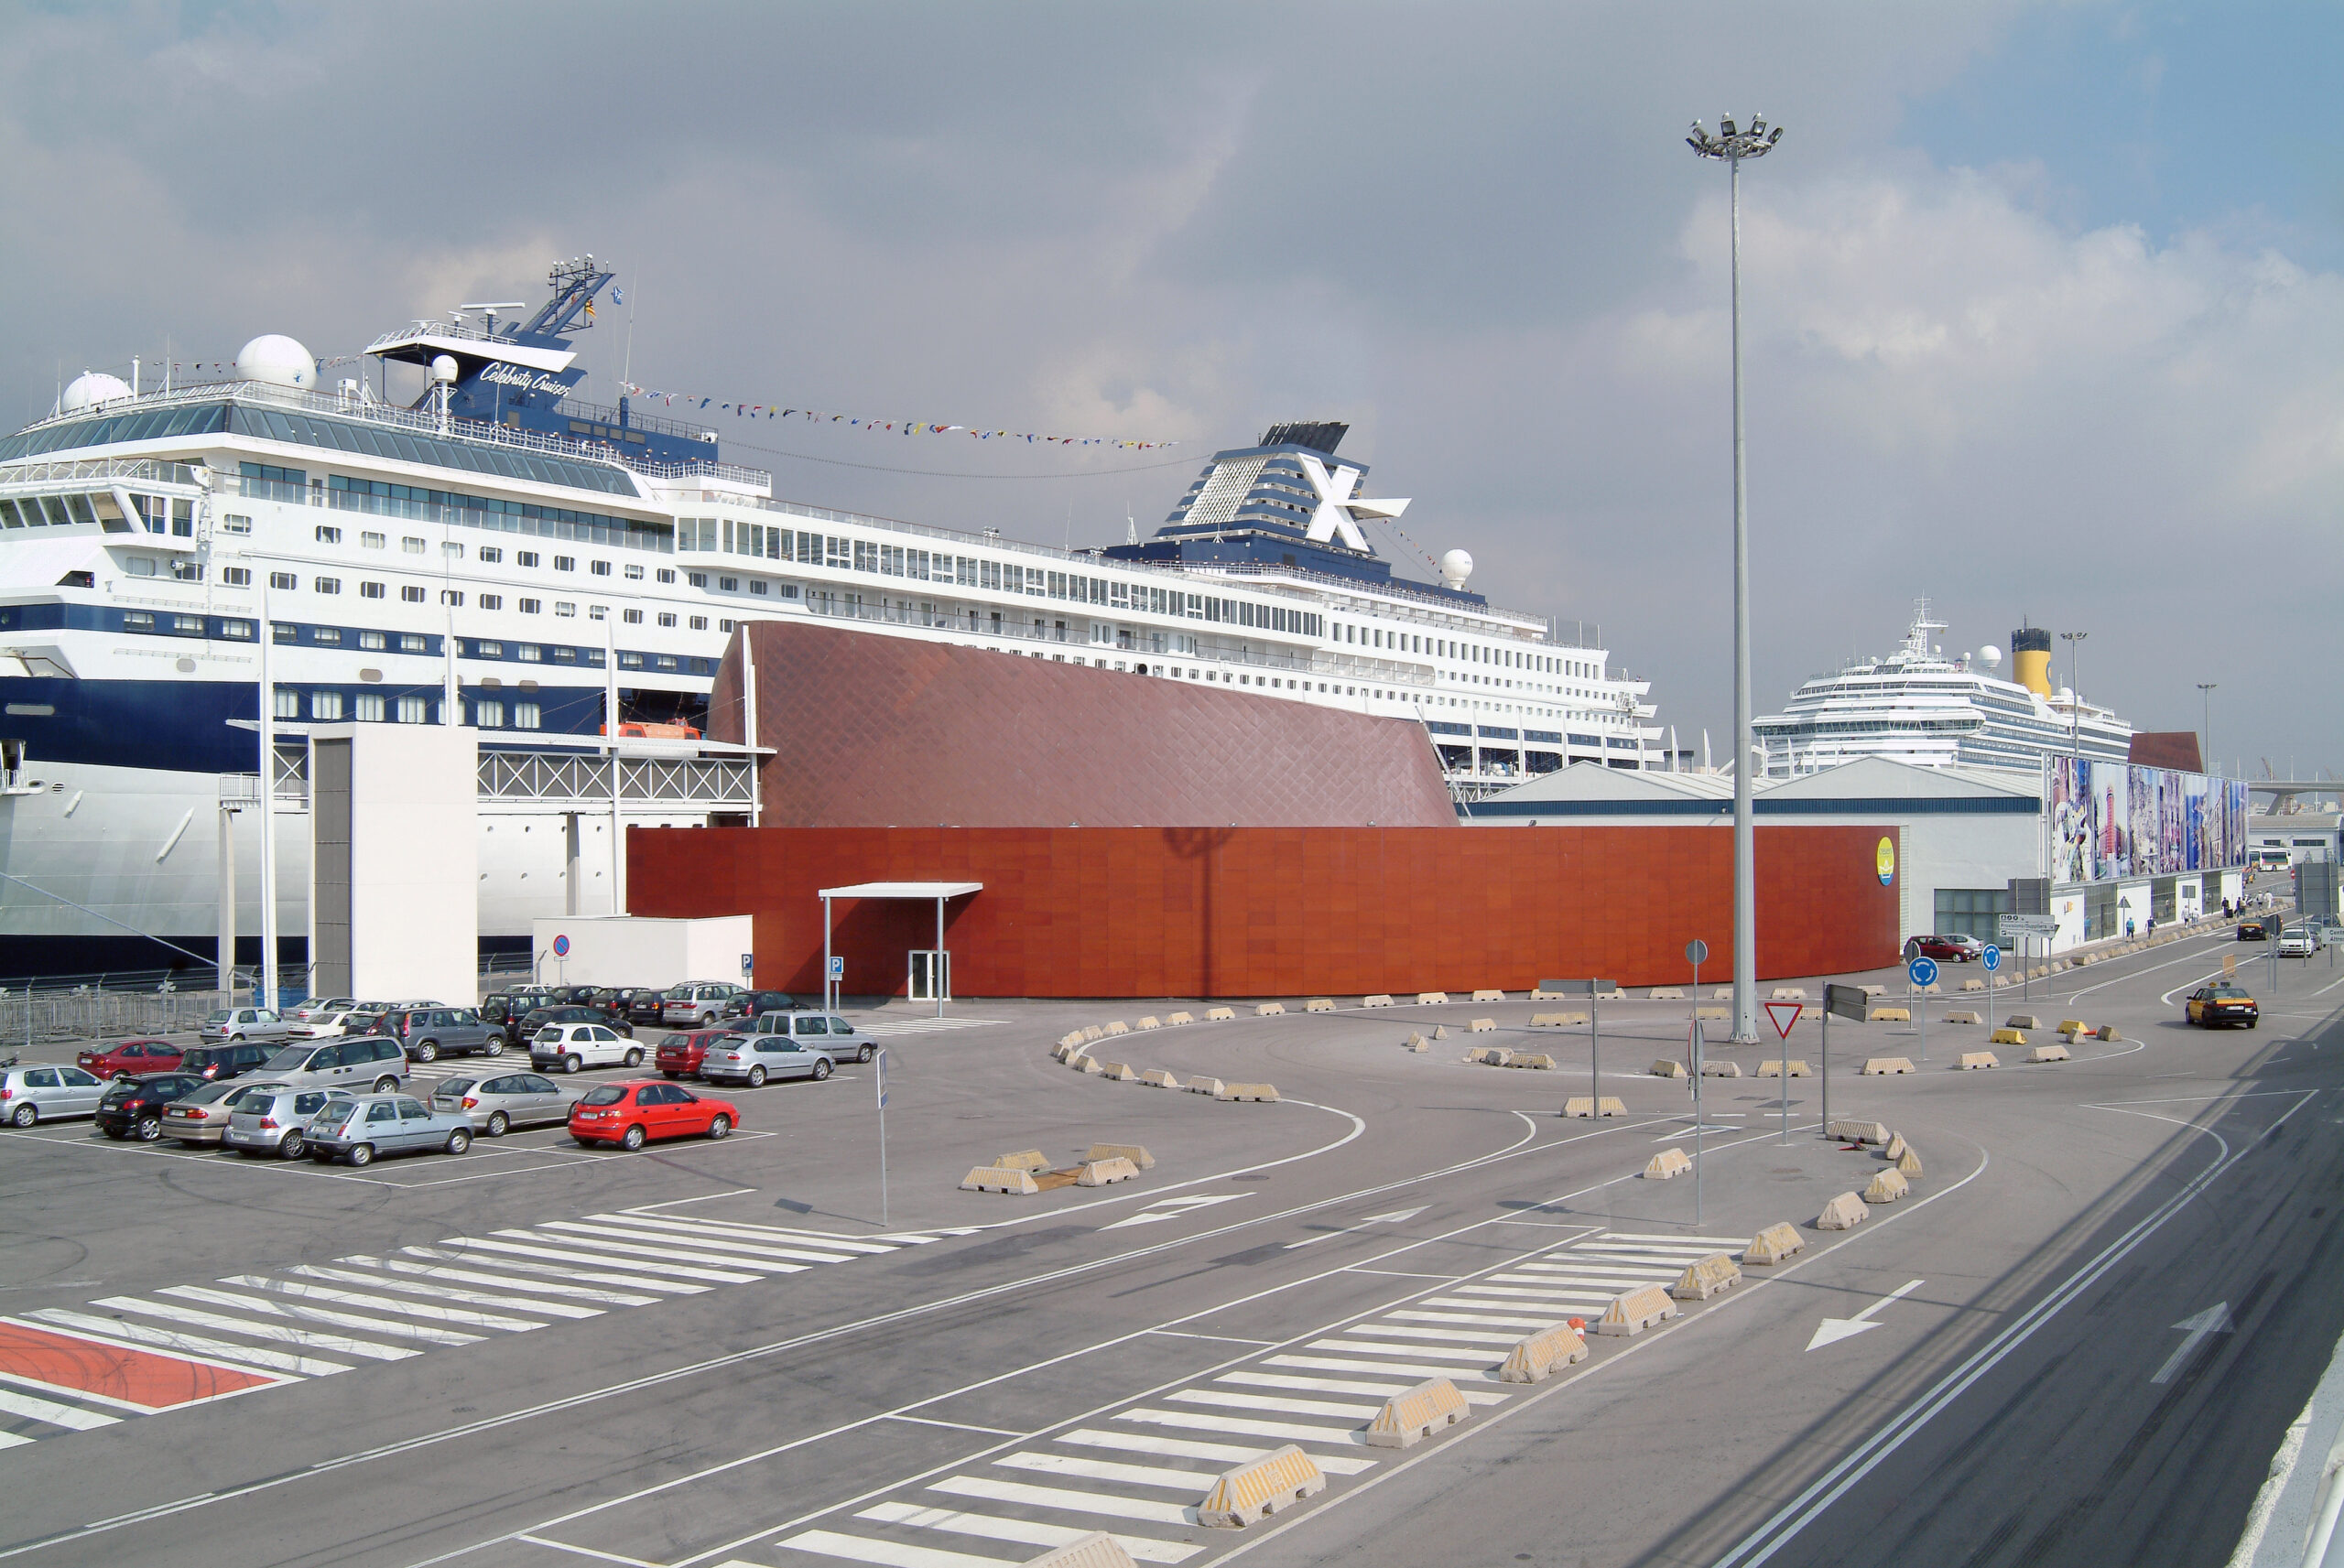 BBAMiami - Barcelona Cruise Terminal